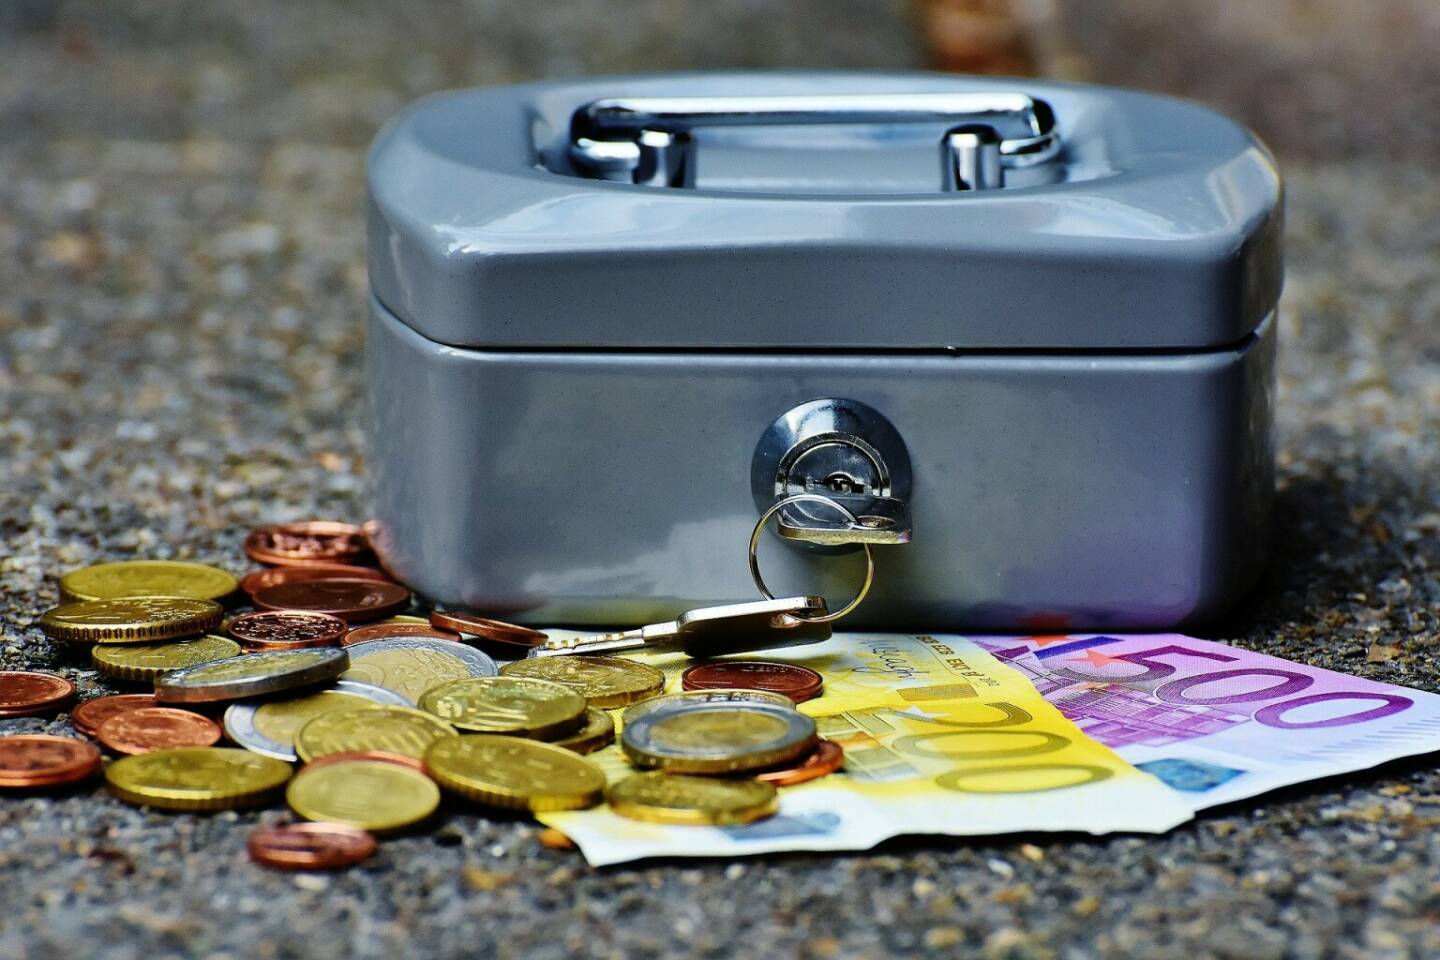 Geldkassette, Geld, Währung, Geldkasse, Finanzen - https://pixabay.com/de/photos/geldkassette-geld-w%C3%A4hrung-geldkasse-1642989/